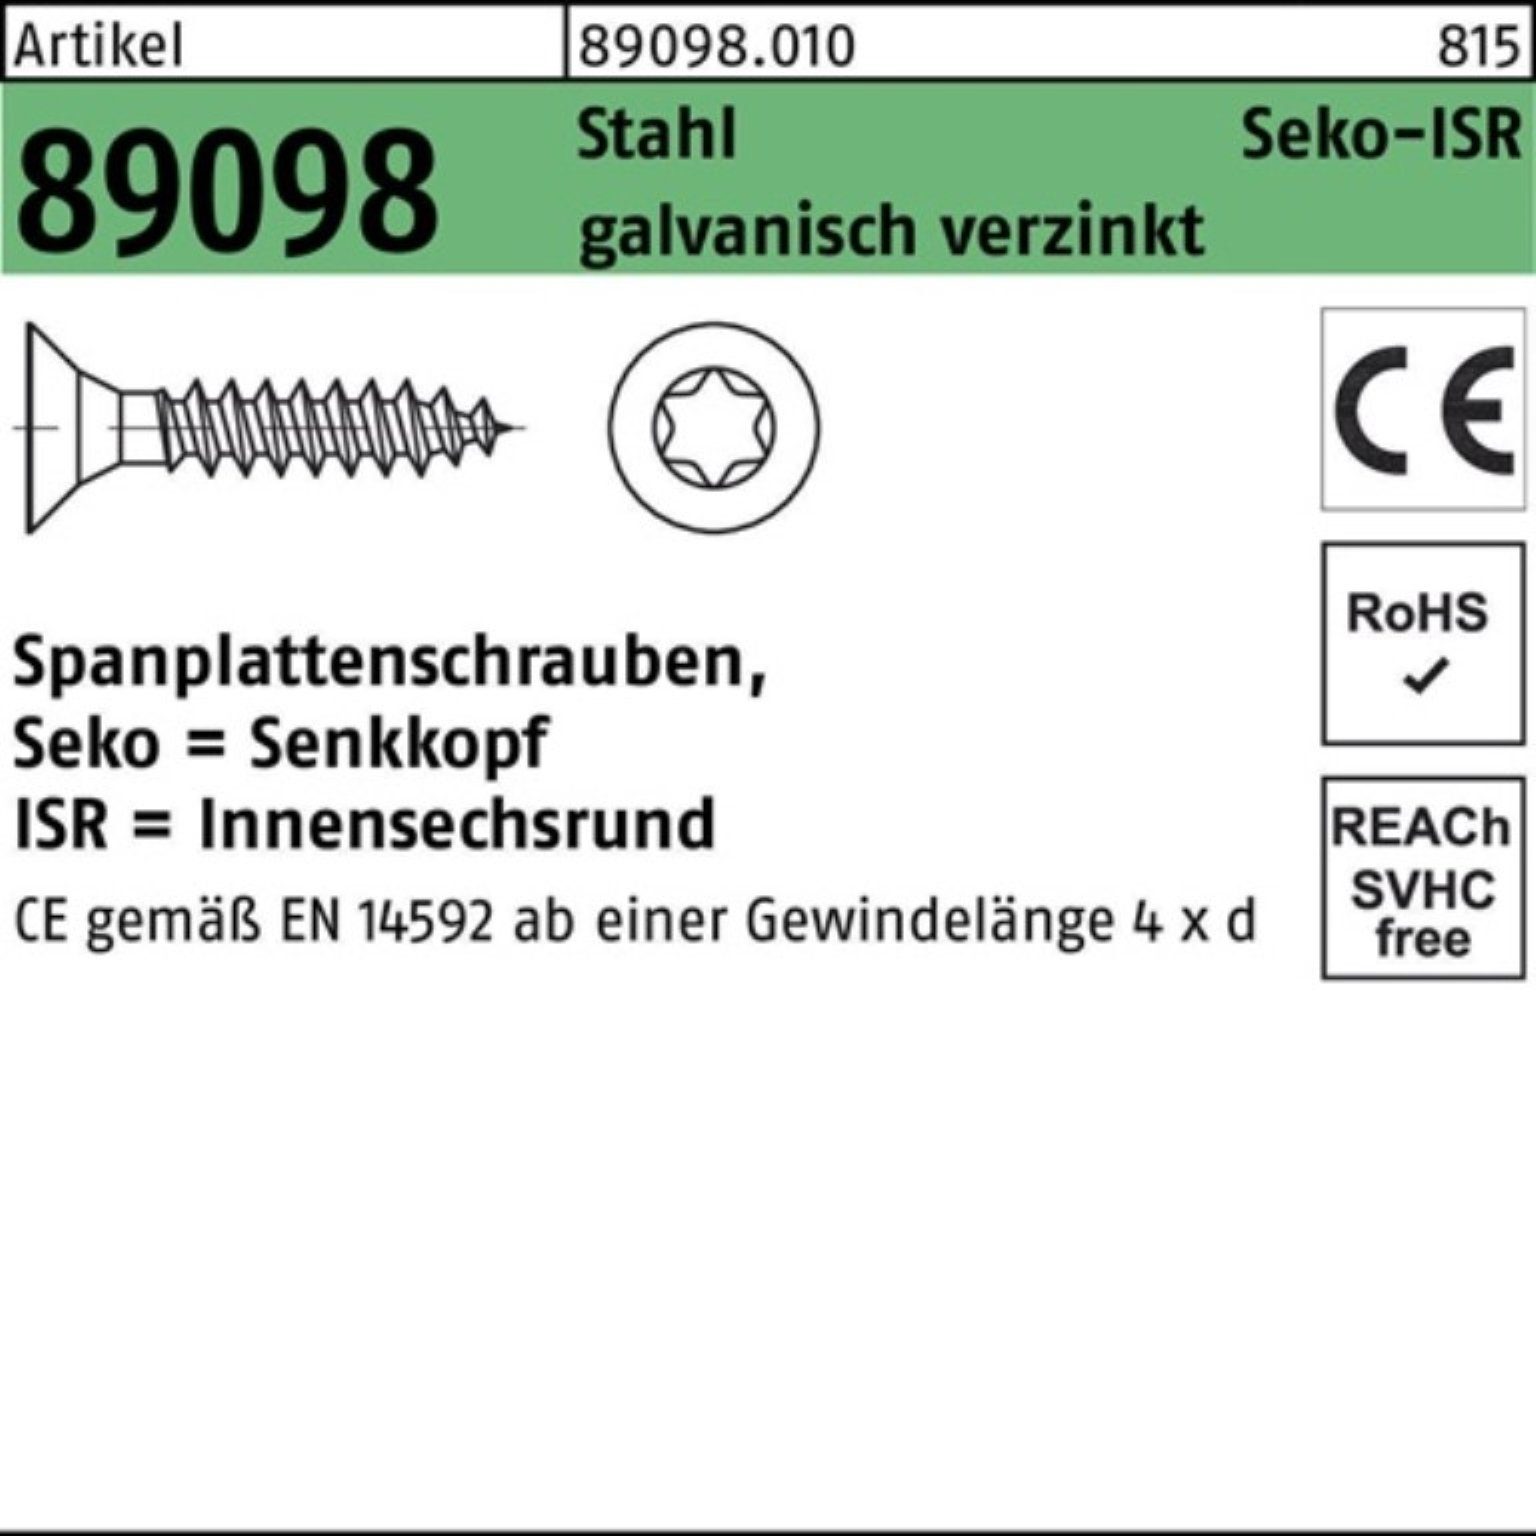 Reyher Spanplattenschraube 1000er Pack Spanplattenschraube R 89098 SEKO ISR VG 4x50-T20 Stahl gal